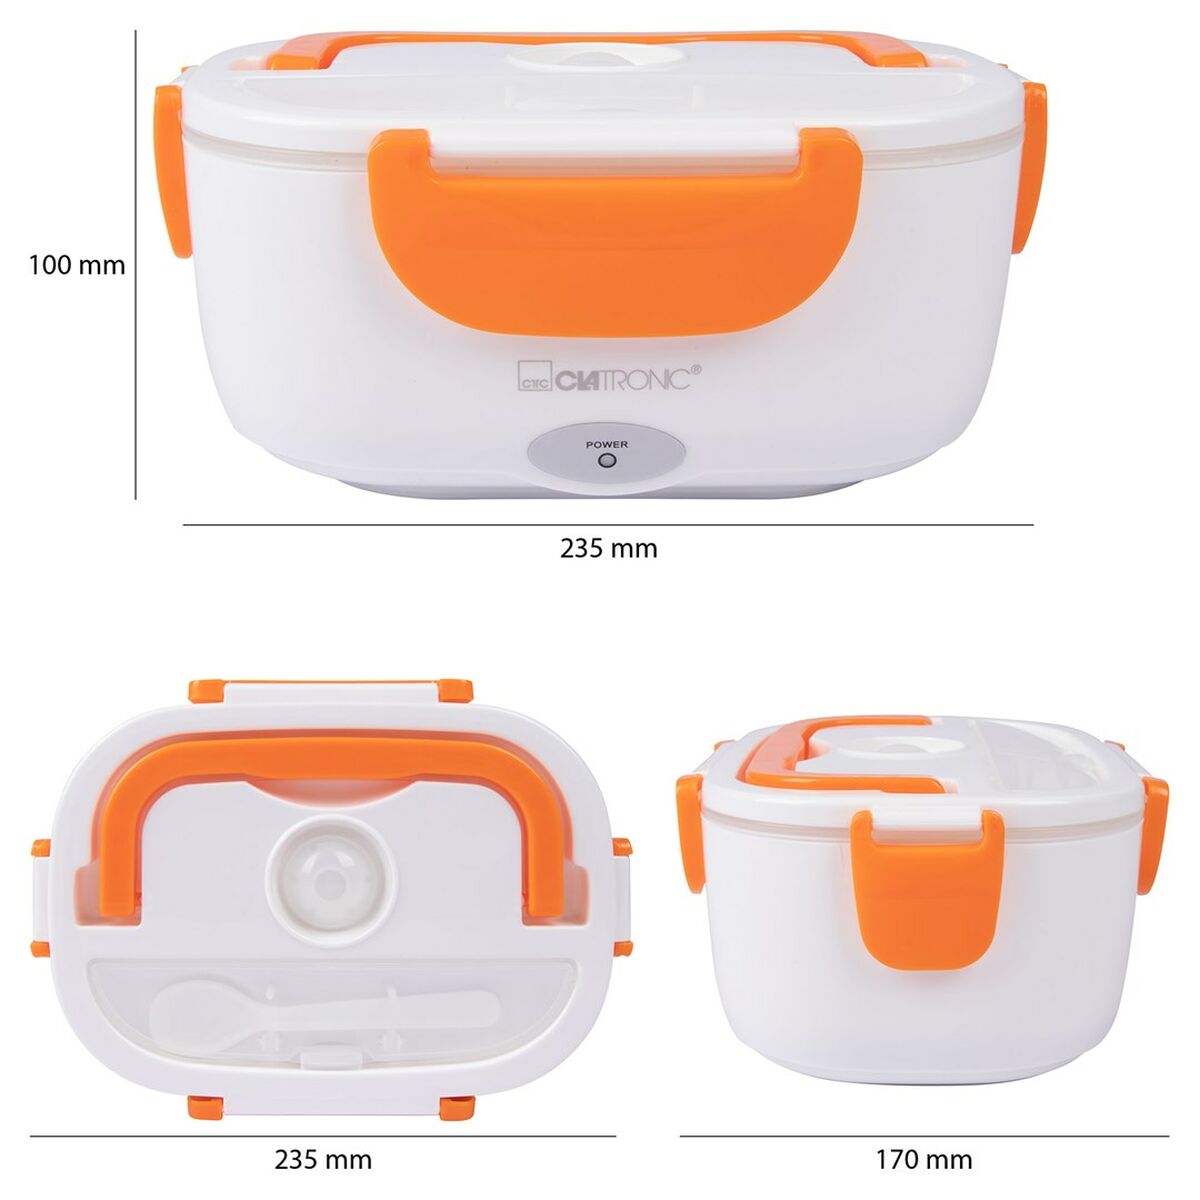 Lunch box Clatronic LB 3719 Orange White/Orange Plastic Rectangular 1,7 L